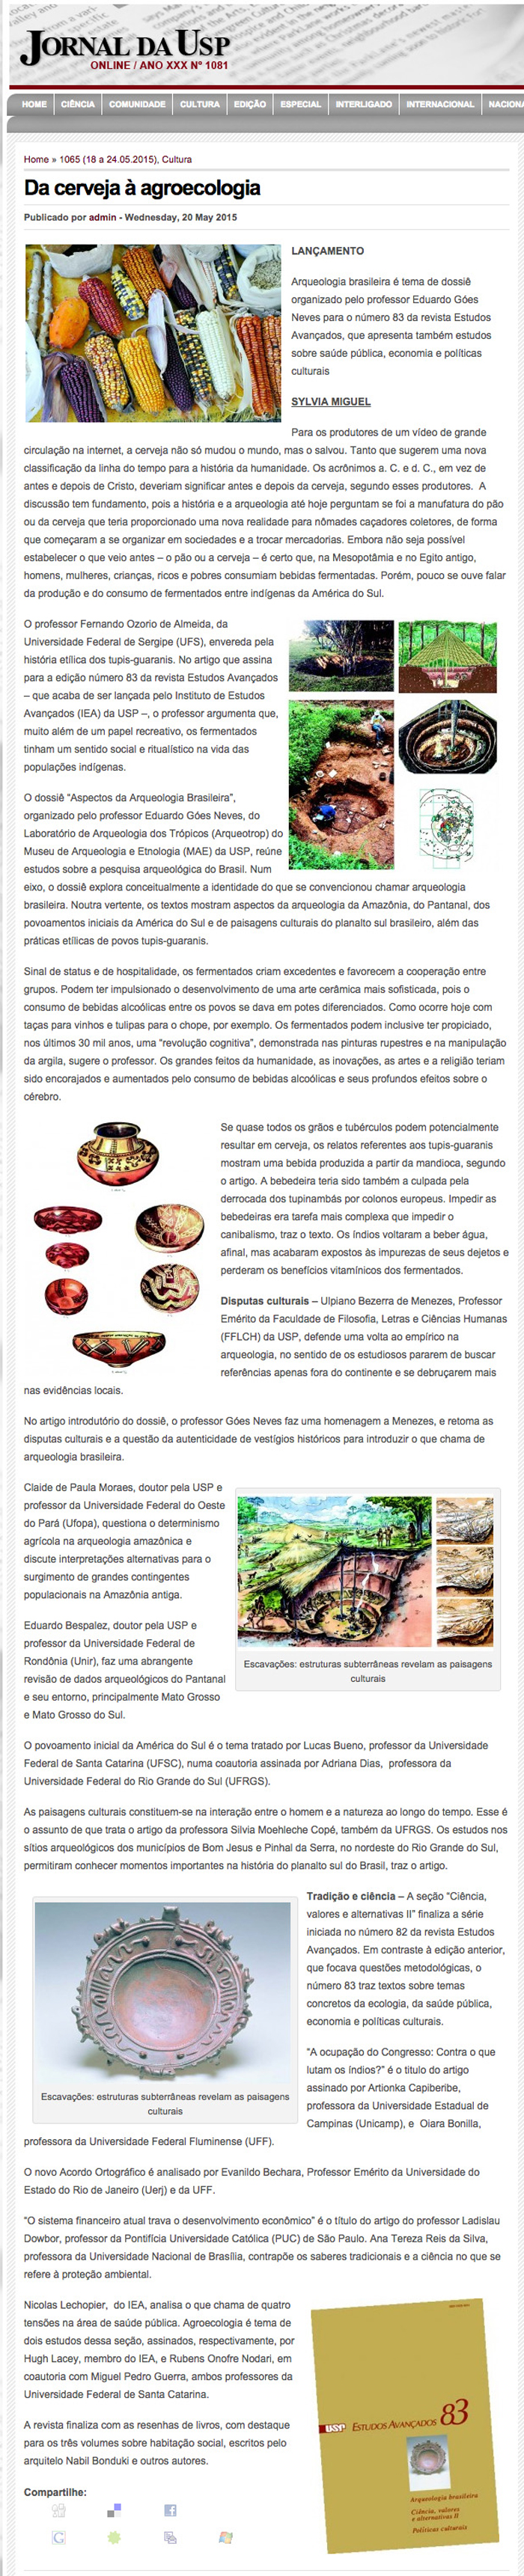 Revista Estudos Avançados nº 83 - Arqueologia brasileira